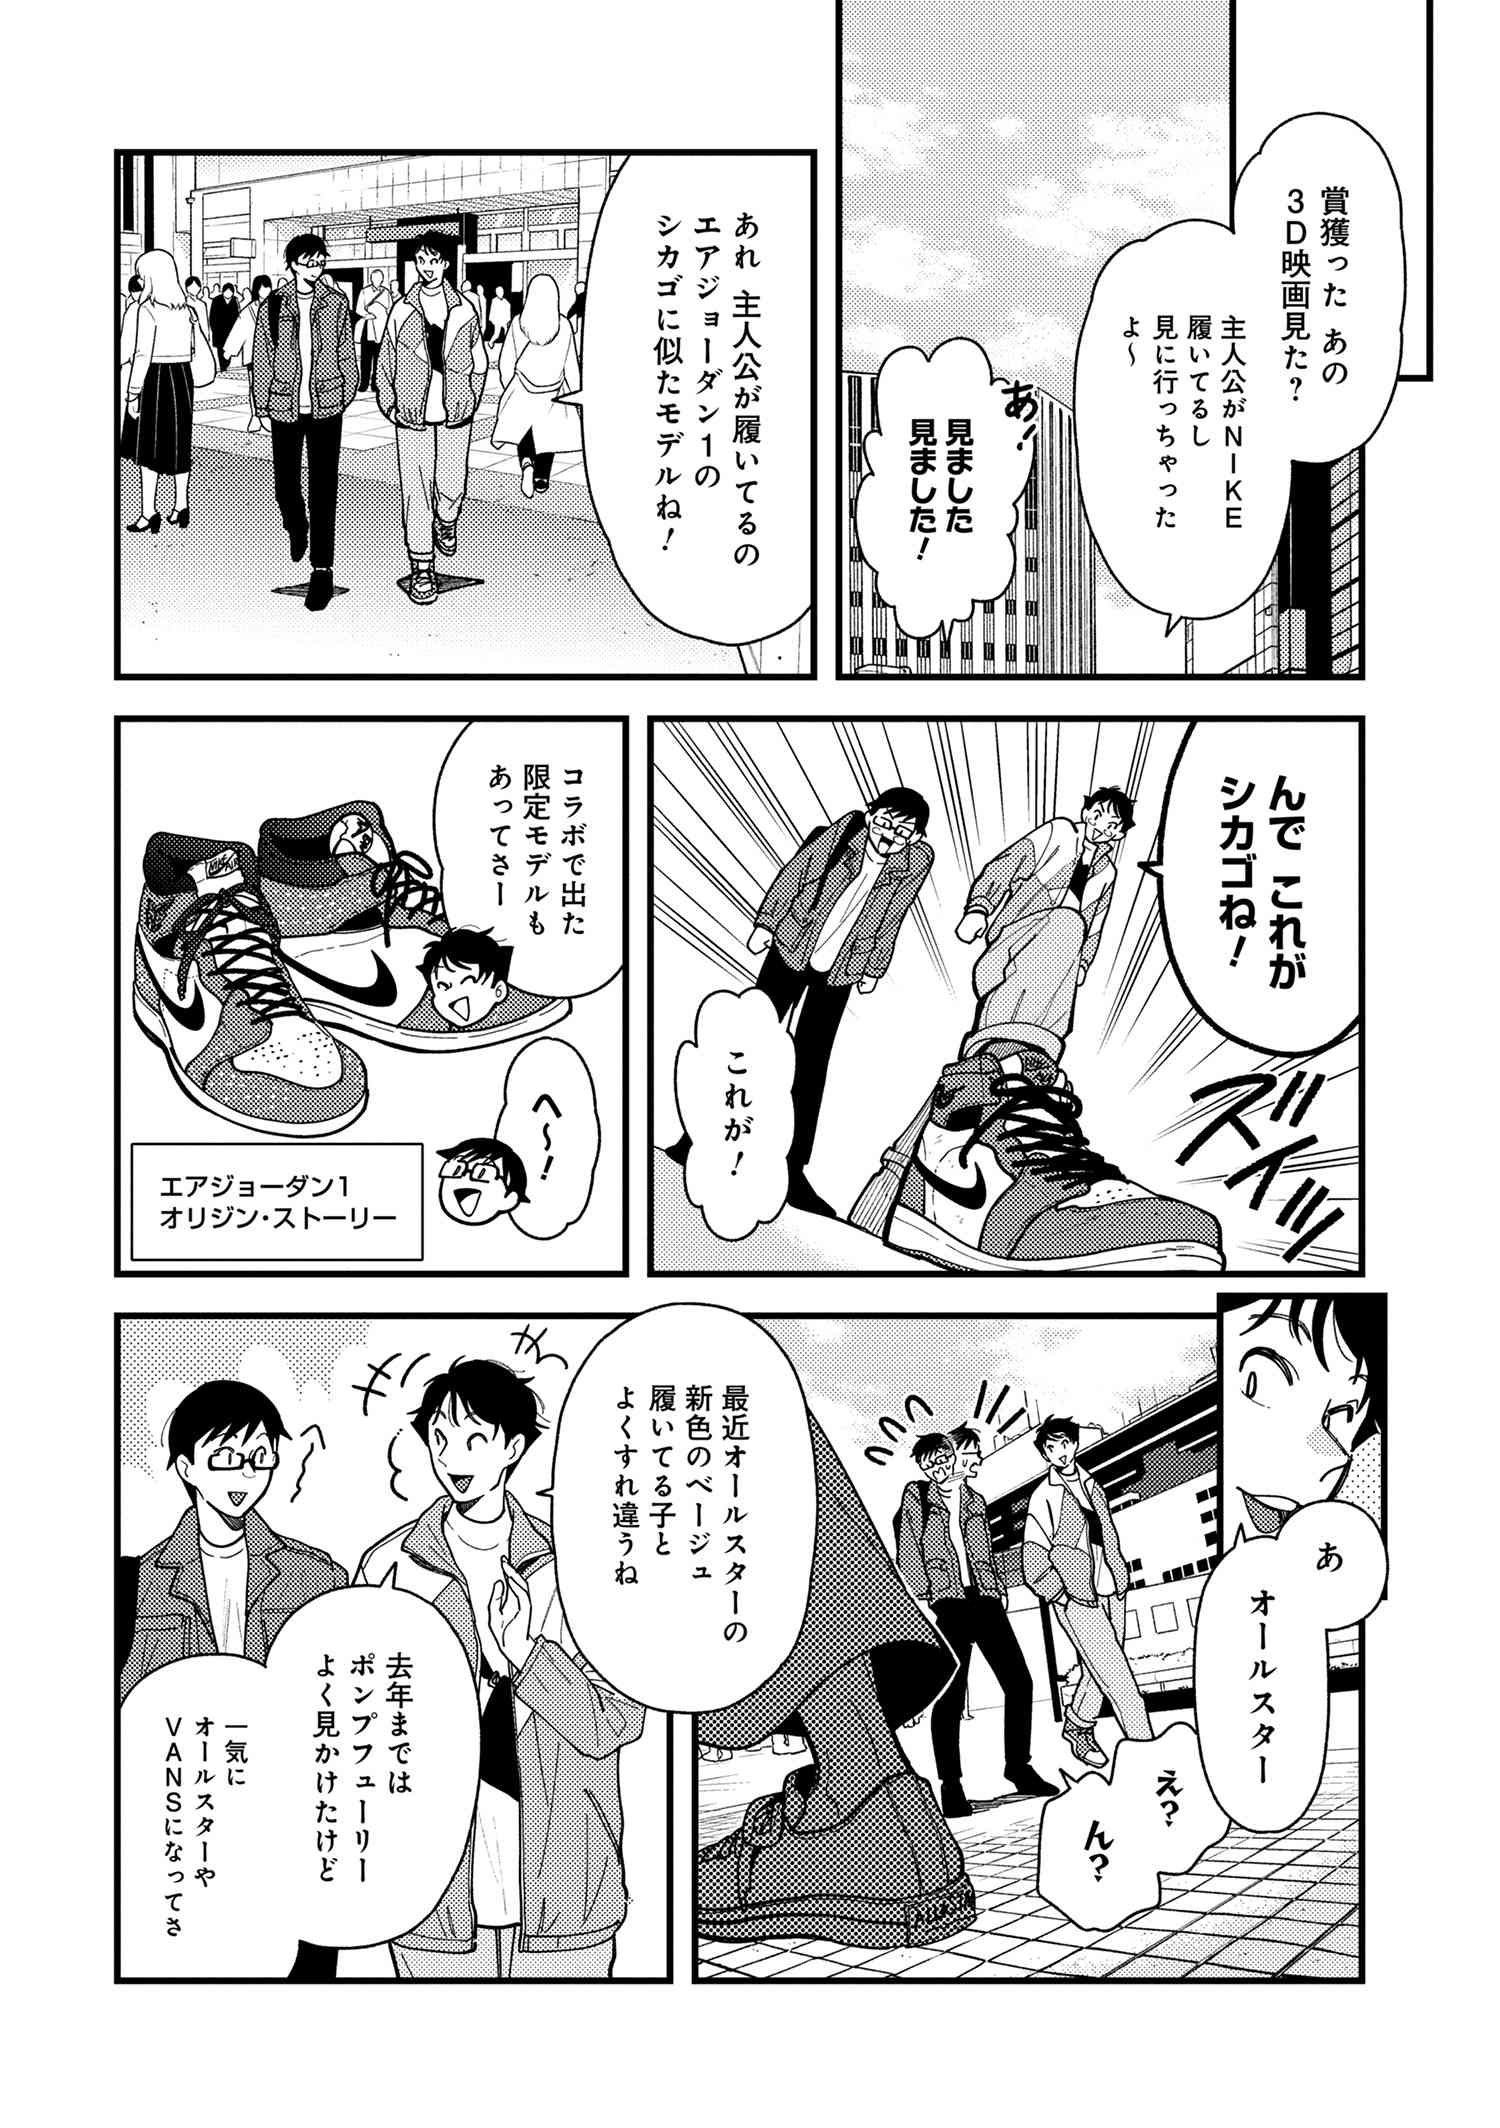 Fuku o Kiru Nara Konna Fuu ni - 服を着るならこんなふうに - Chapter 68 - Page 4